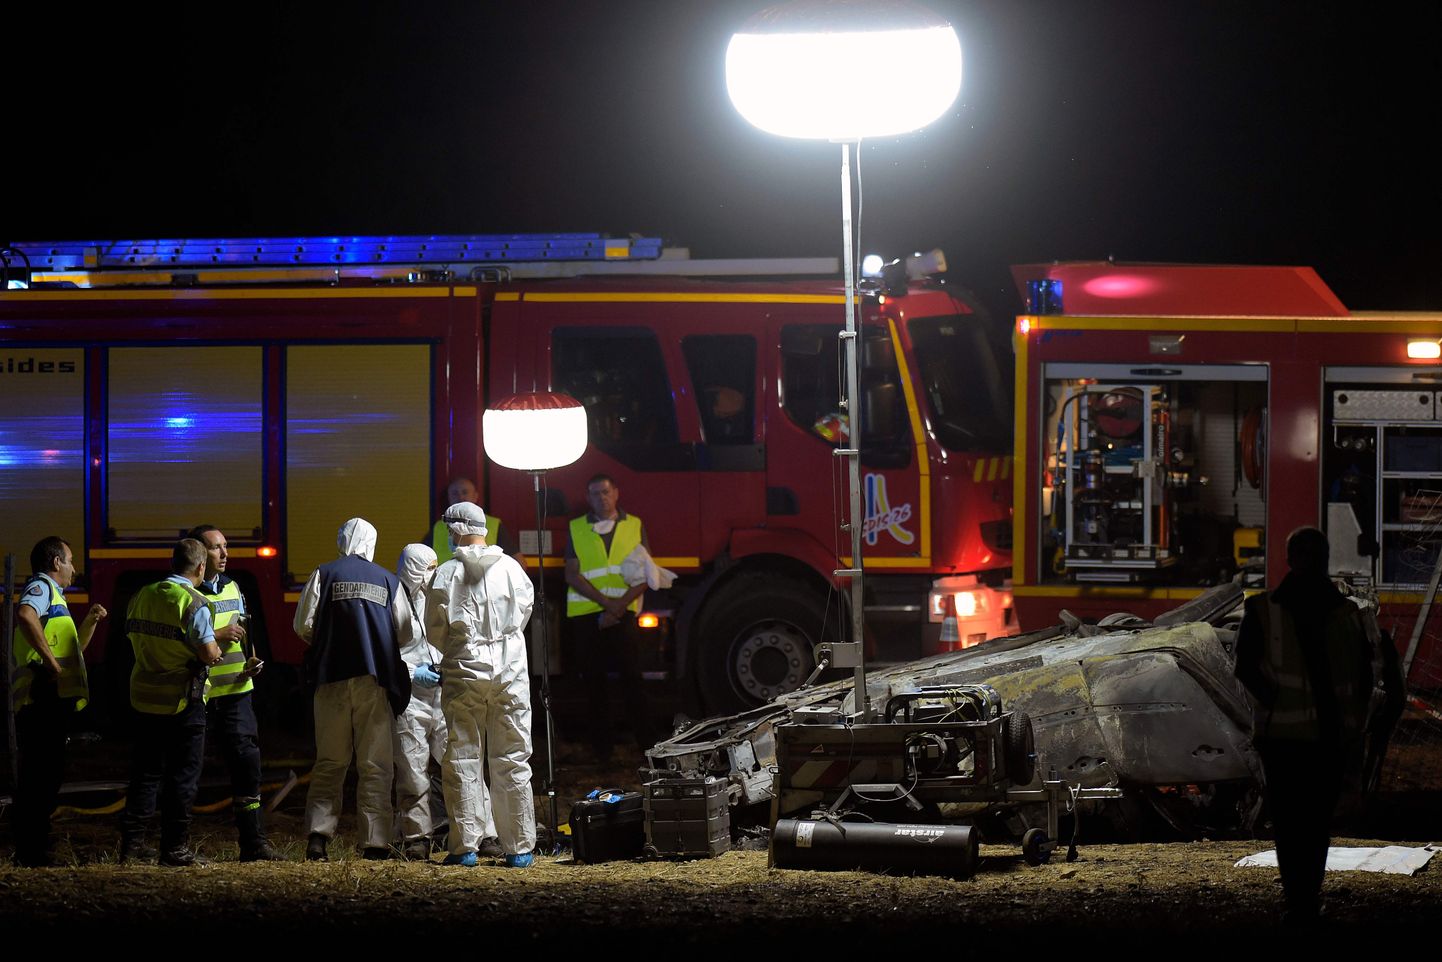 Prantsuse päästetöötajad ja tuletõrjujad viie lapse elu nõudnud liiklusõnnetuse toimumispaigas.